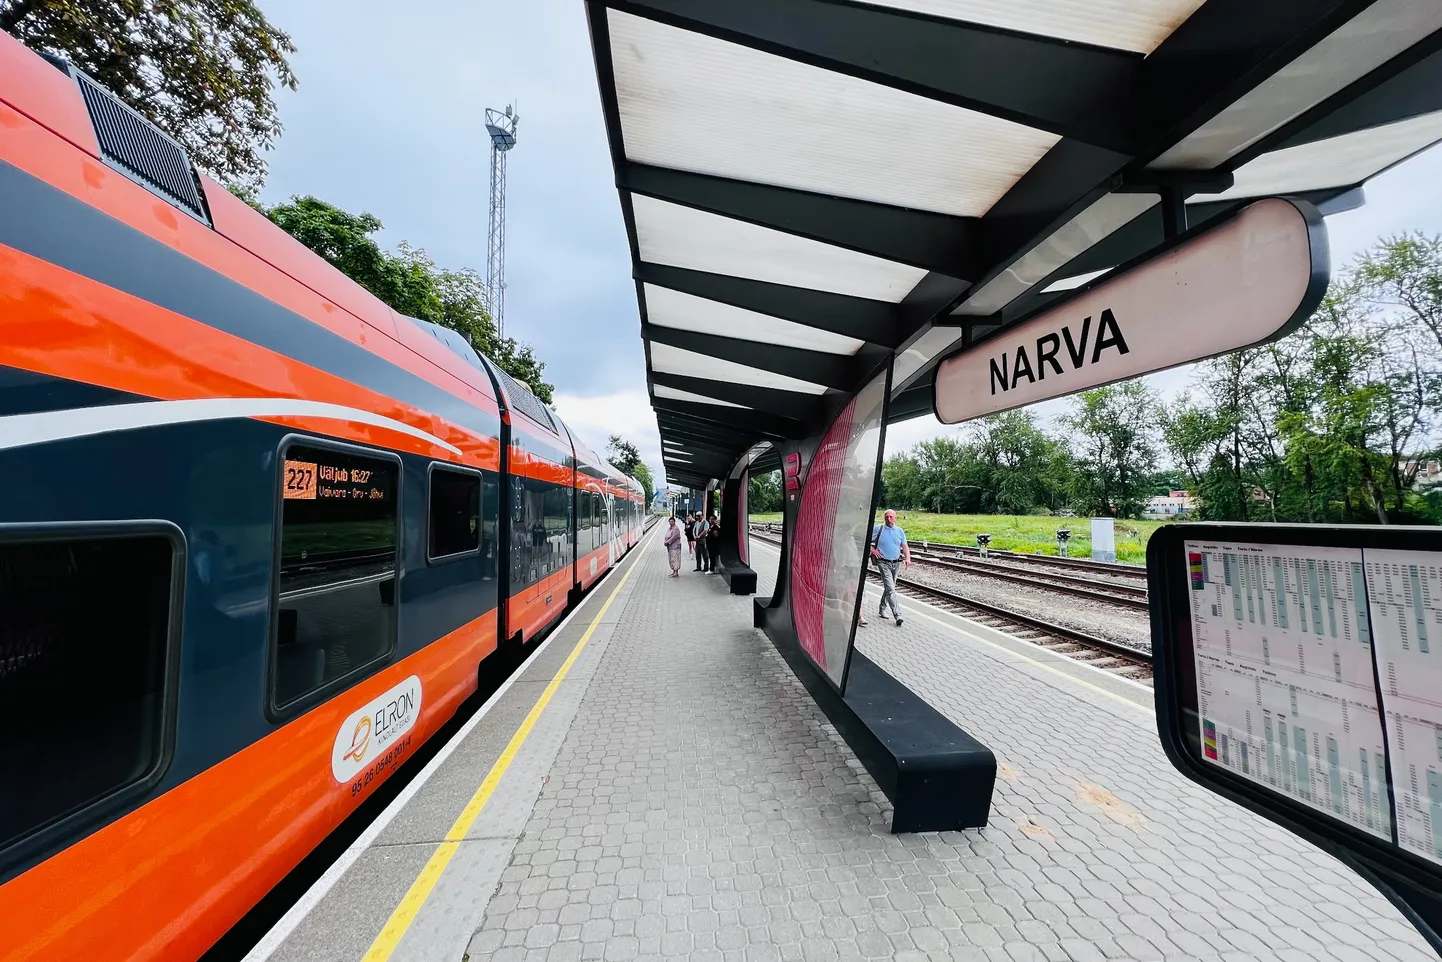 Железнодорожная станция "Narva" и поезд "Elron".